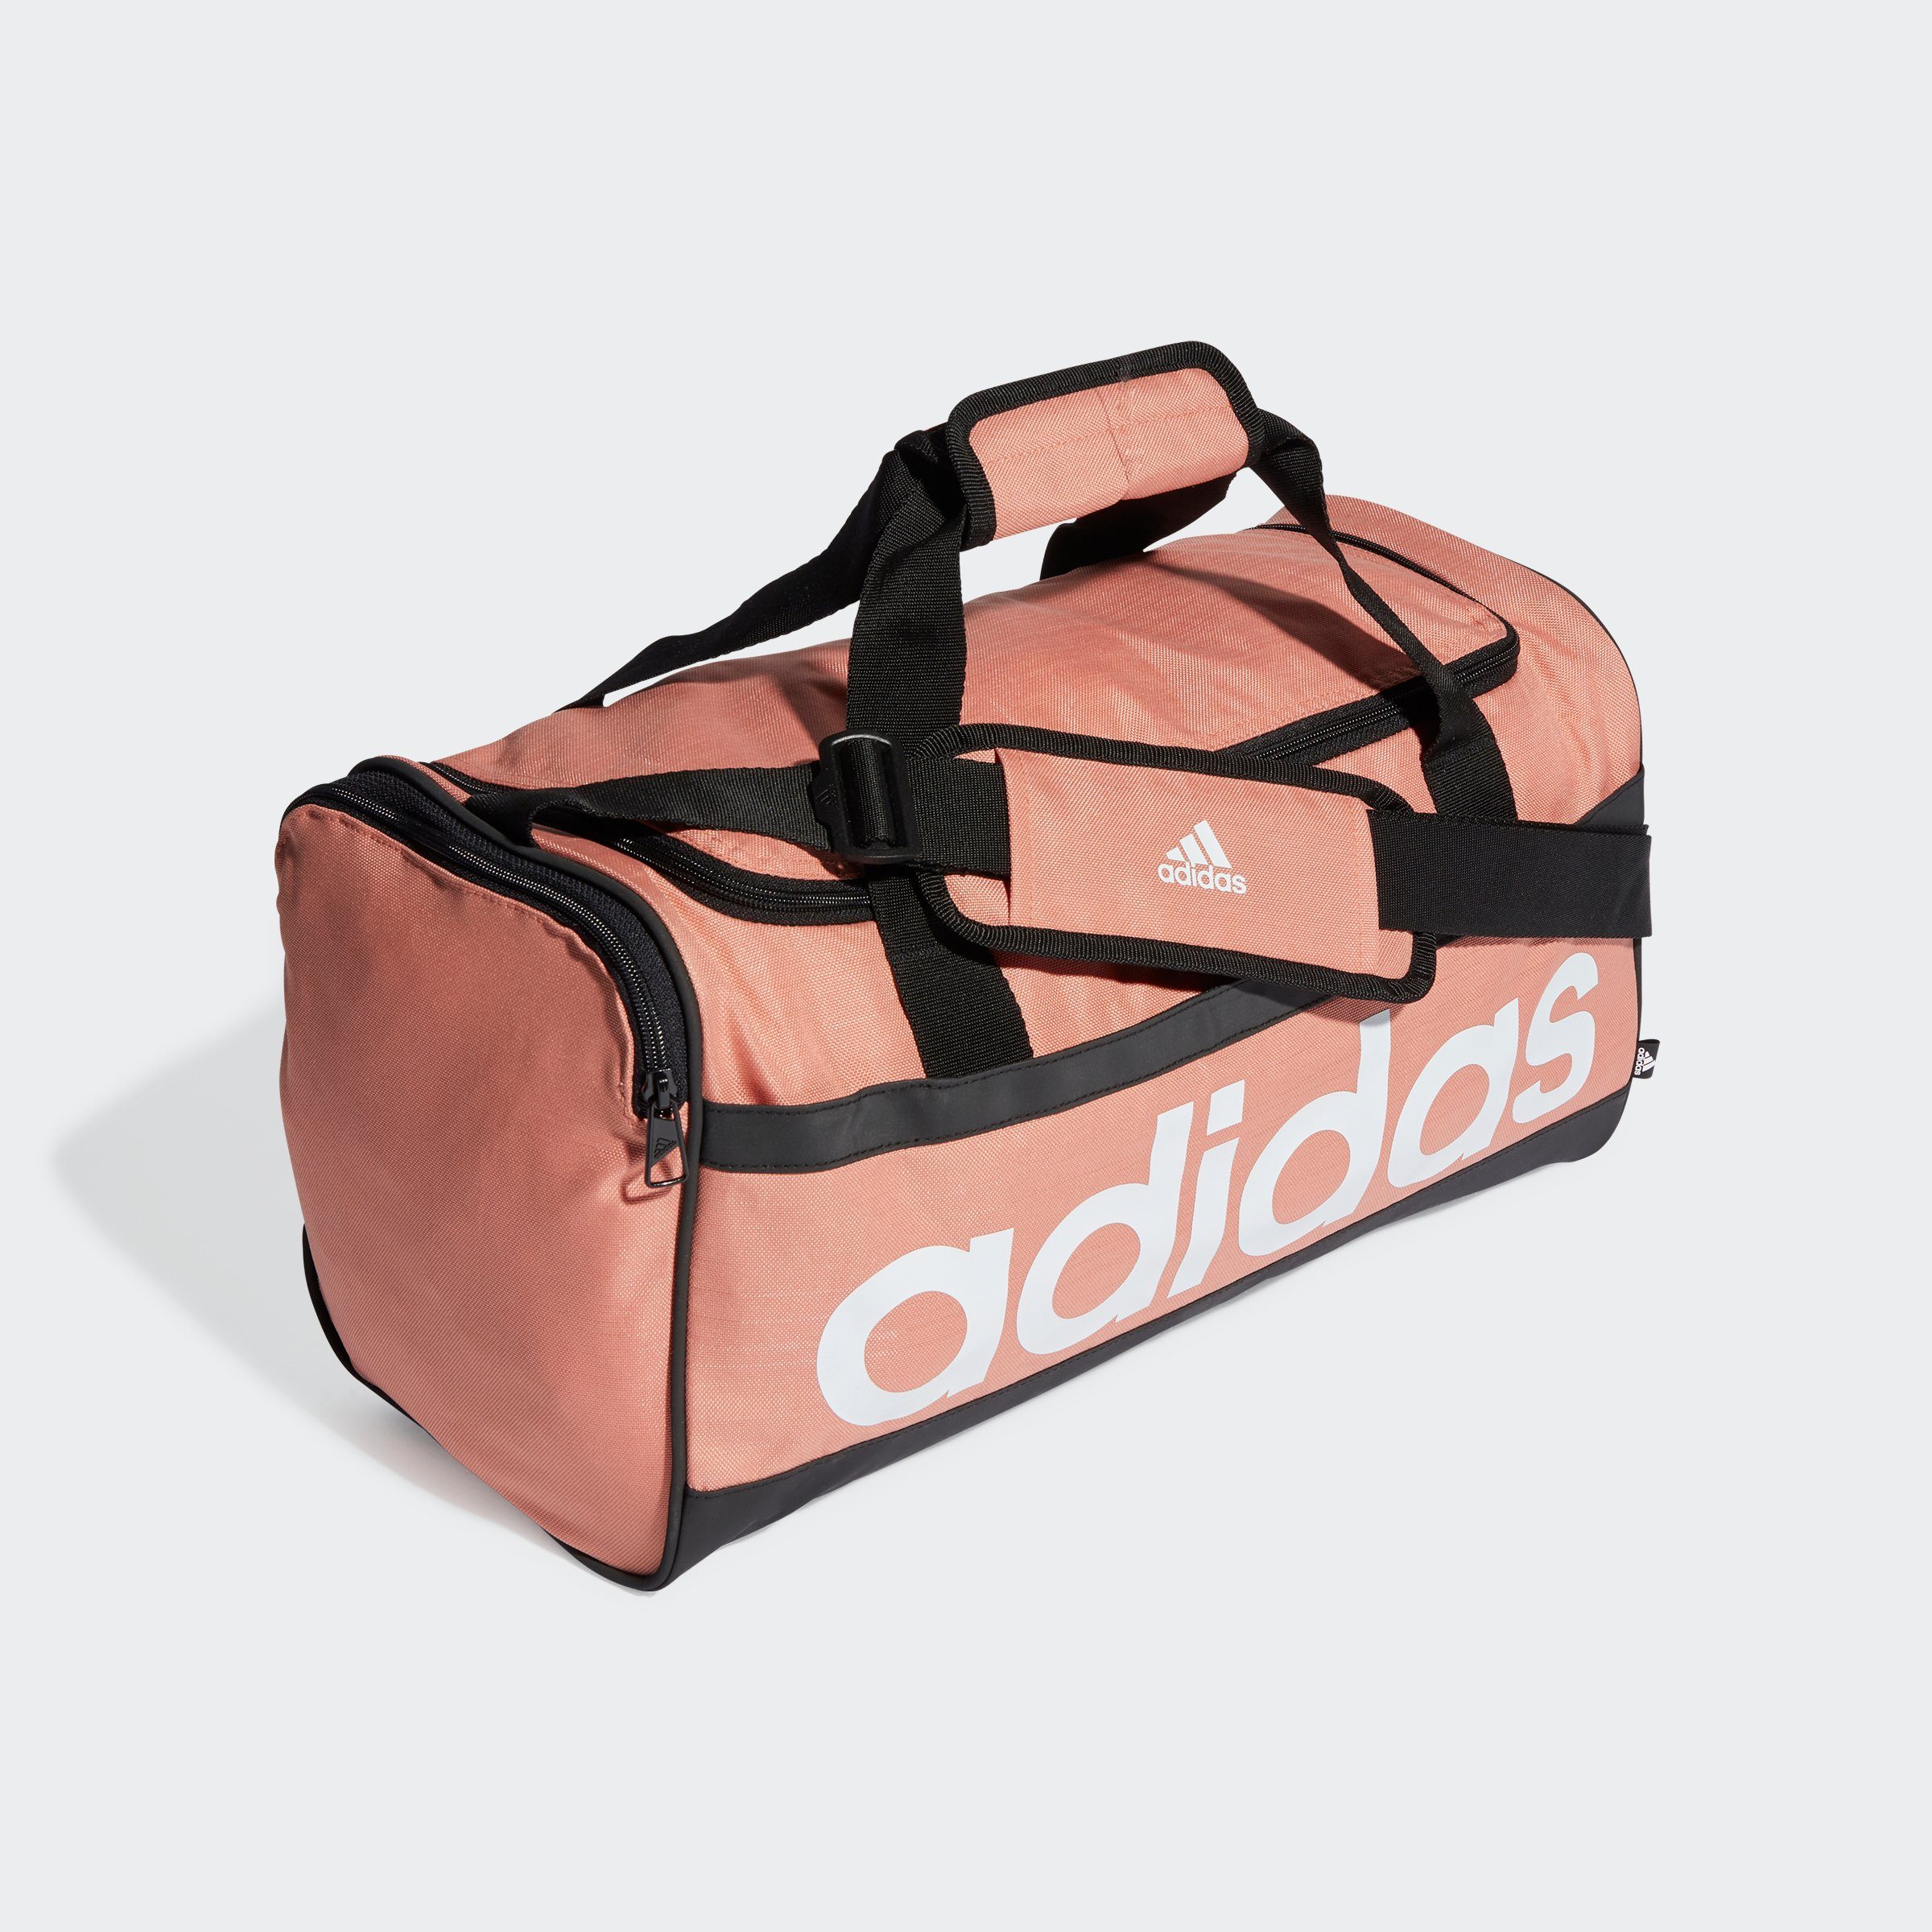 Günstige Sporttaschen online kaufen » Sporttaschen SALE | OTTO